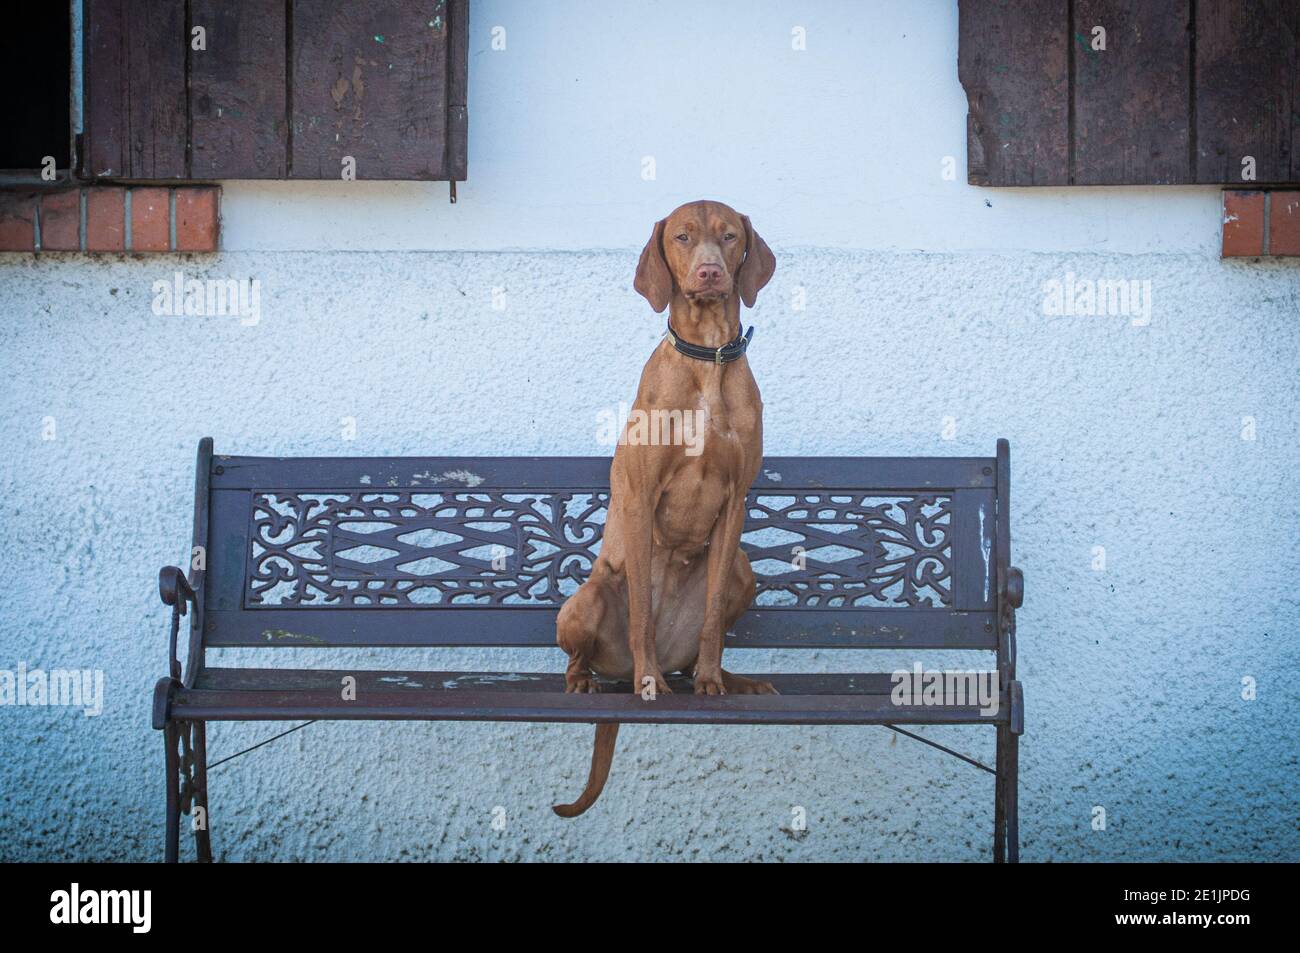 Schöne ungarische Vizsla sitzt auf einer Bank in einem ländlichen Bauernhof. Vizsla sind tolle Jagdhunde und lieben vor allem die Jagd auf Vögel Stockfoto